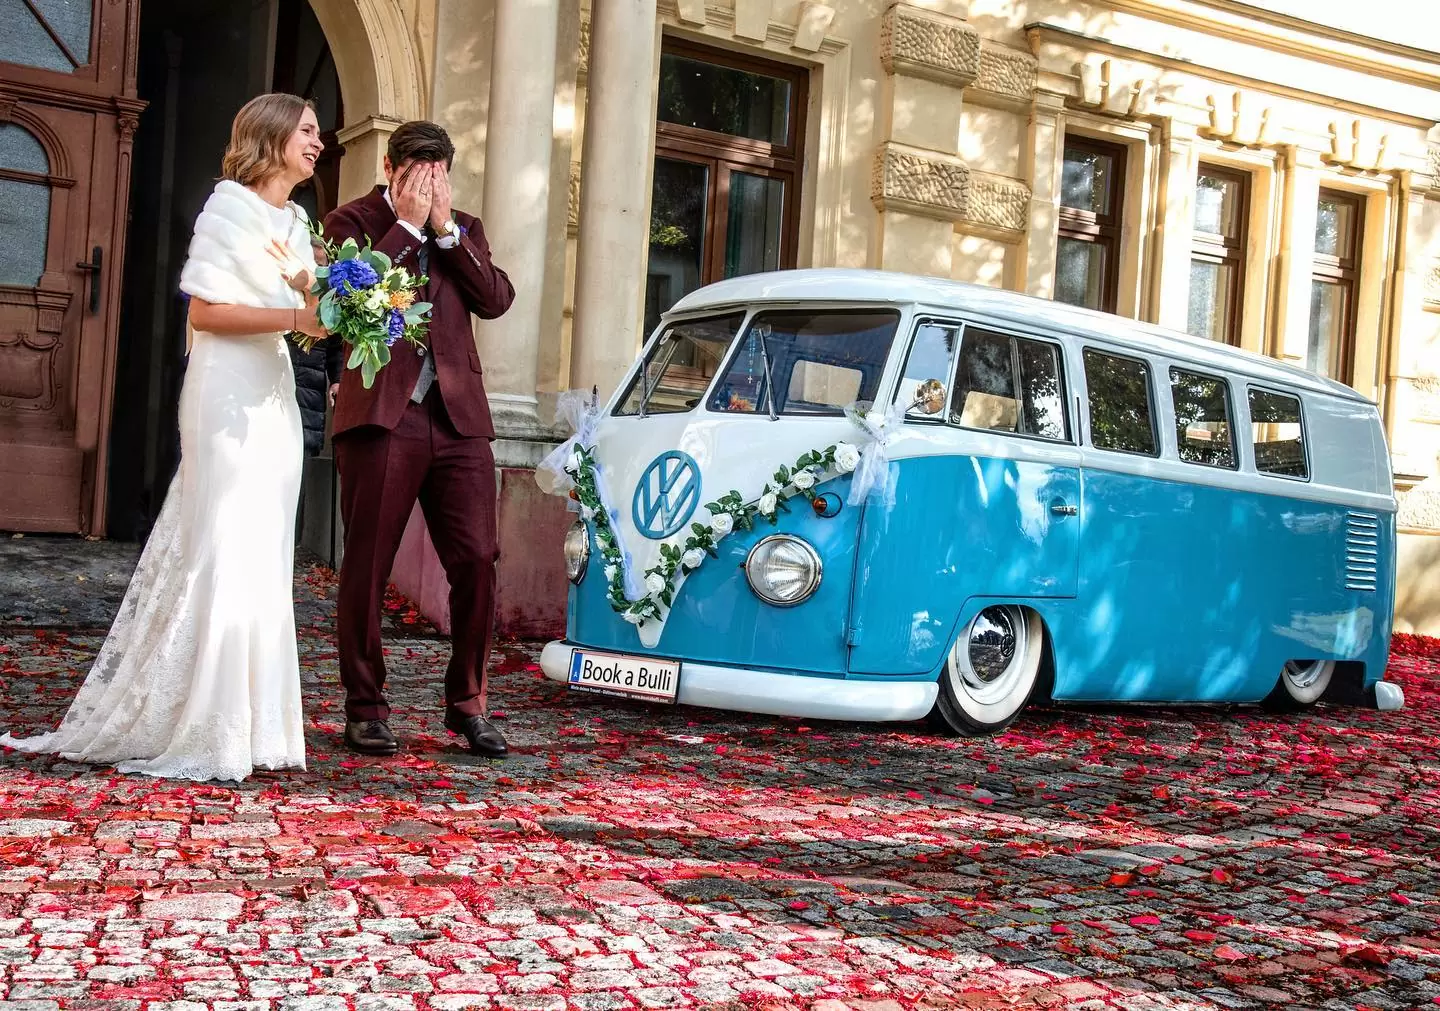 Фото. Свадьба в стиле 90-X. Жених и Невеса на фоне старенького авто марки Volkswagen